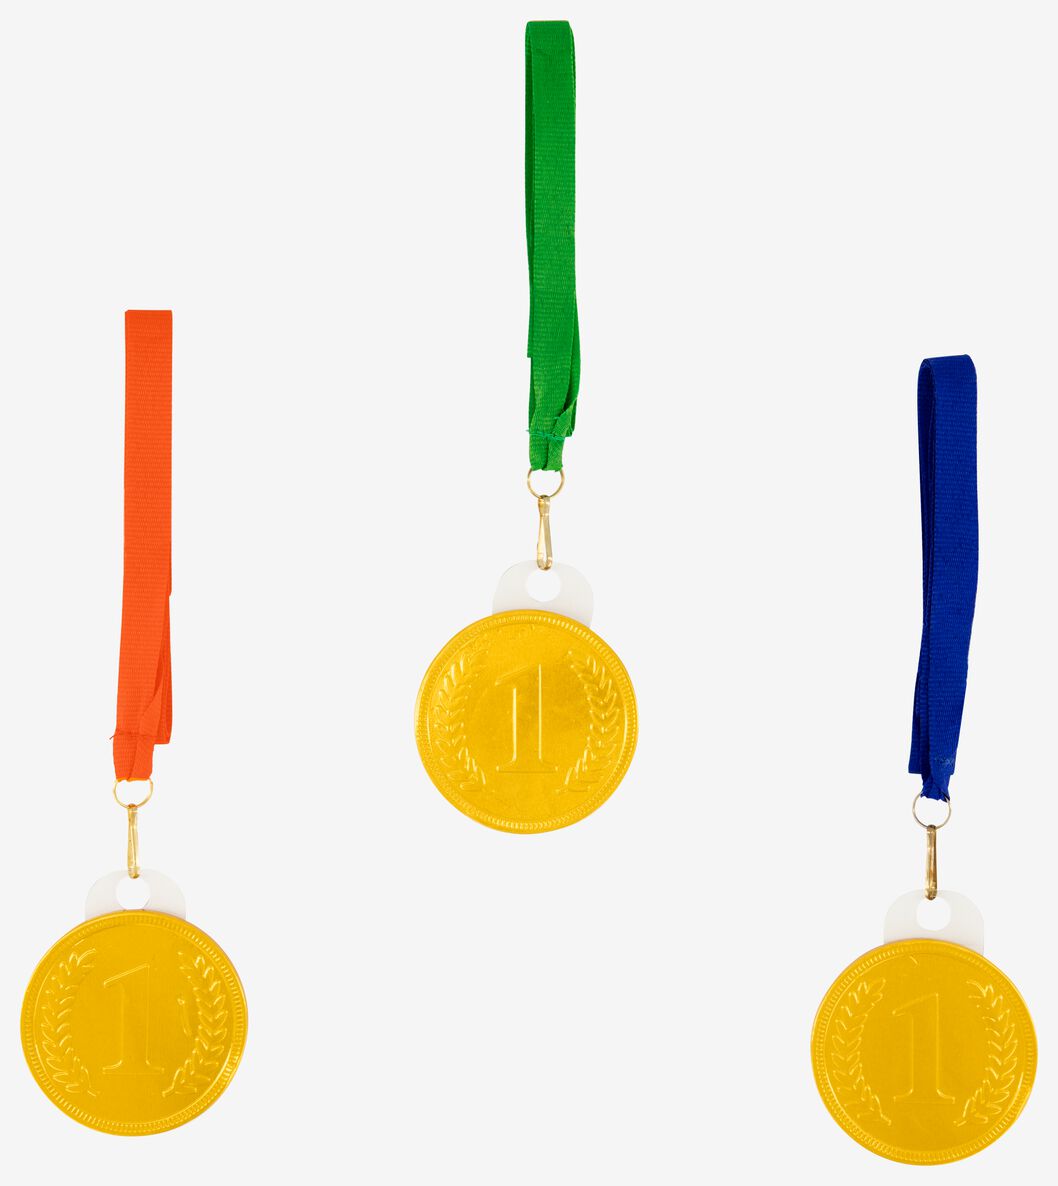 melkchocolade medailles - 3 stuks - 10200051 - HEMA